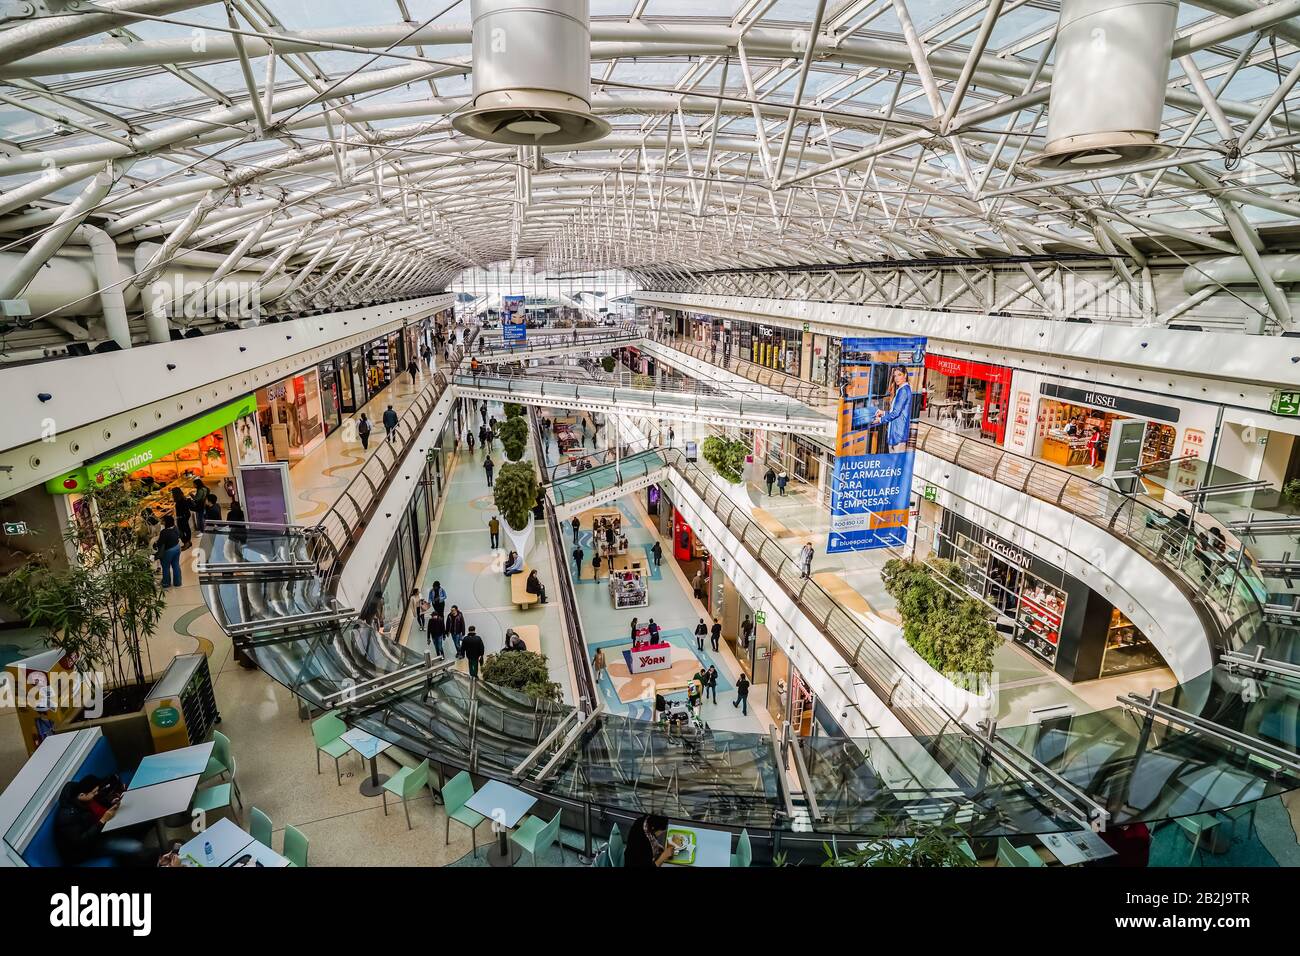 El centro comercial Vasco da gama es uno de los más grandes de Lisboa, con  una variedad de tiendas multinacionales, de Marca o de diseño que se  encuentran en un pozo Fotografía